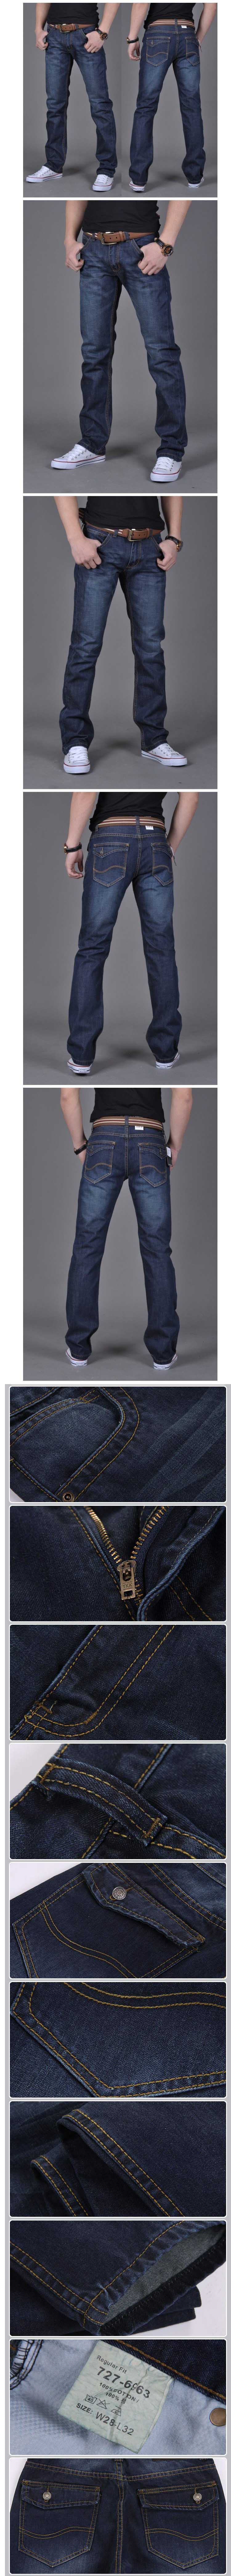 cari celana jeans  pria model regular fit ? klik dan pesan online disini, proses mudah dan pengiriman cepat.